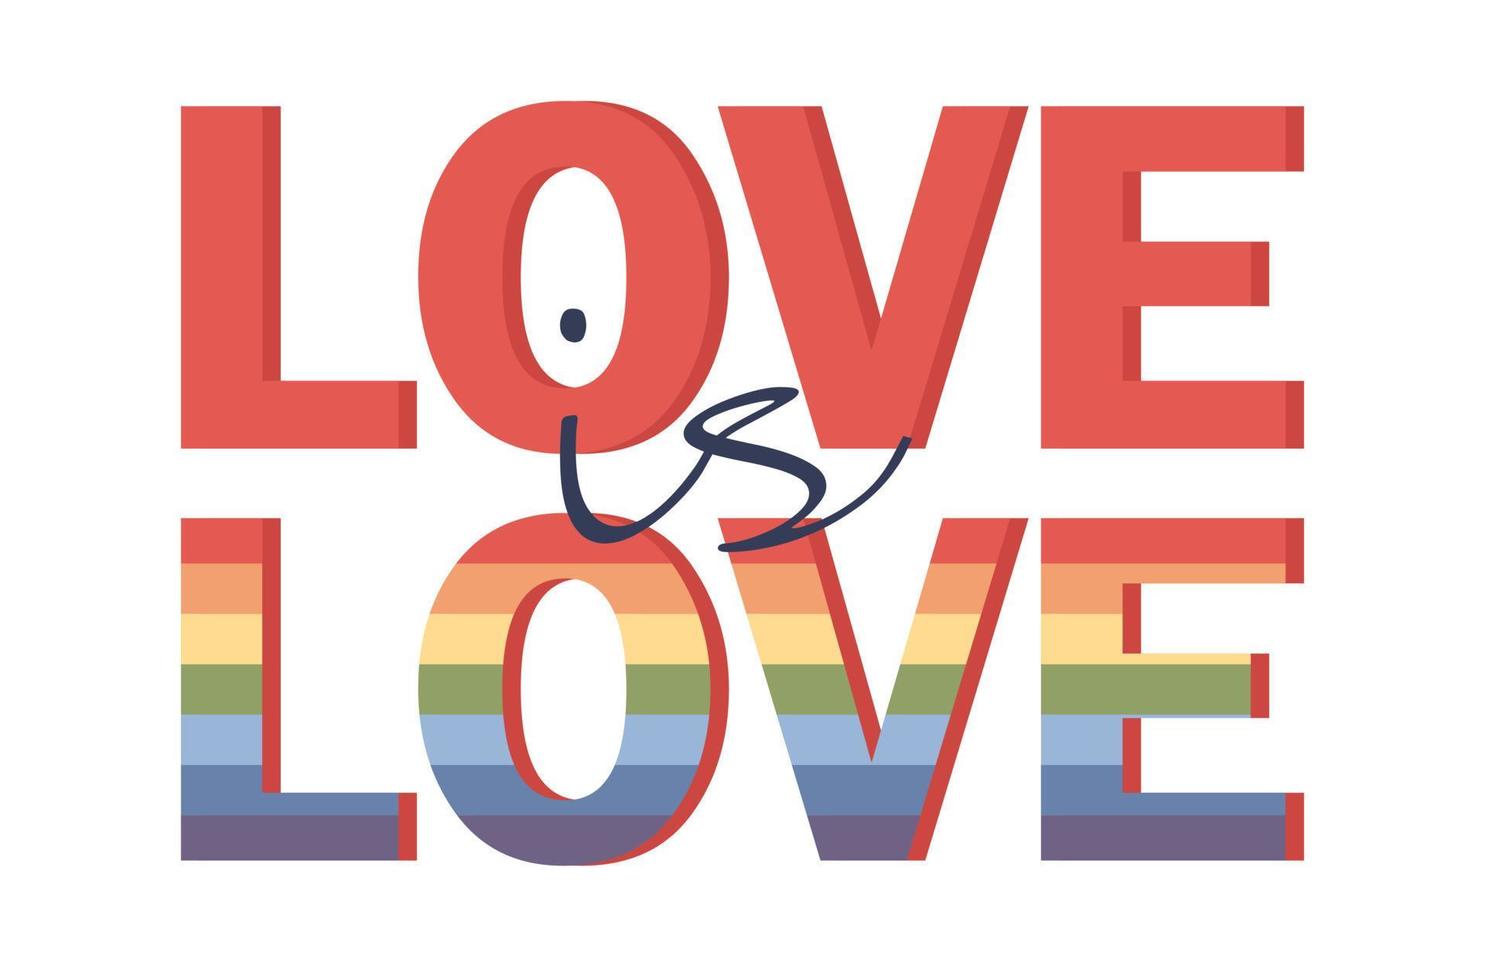 amor é amor rotulação. lgbt orgulho ícone. lésbica, gay, bissexual, transgêneros conceito amor símbolo. humano direitos e tolerância. cor arco Iris bandeira. vetor plano ilustração